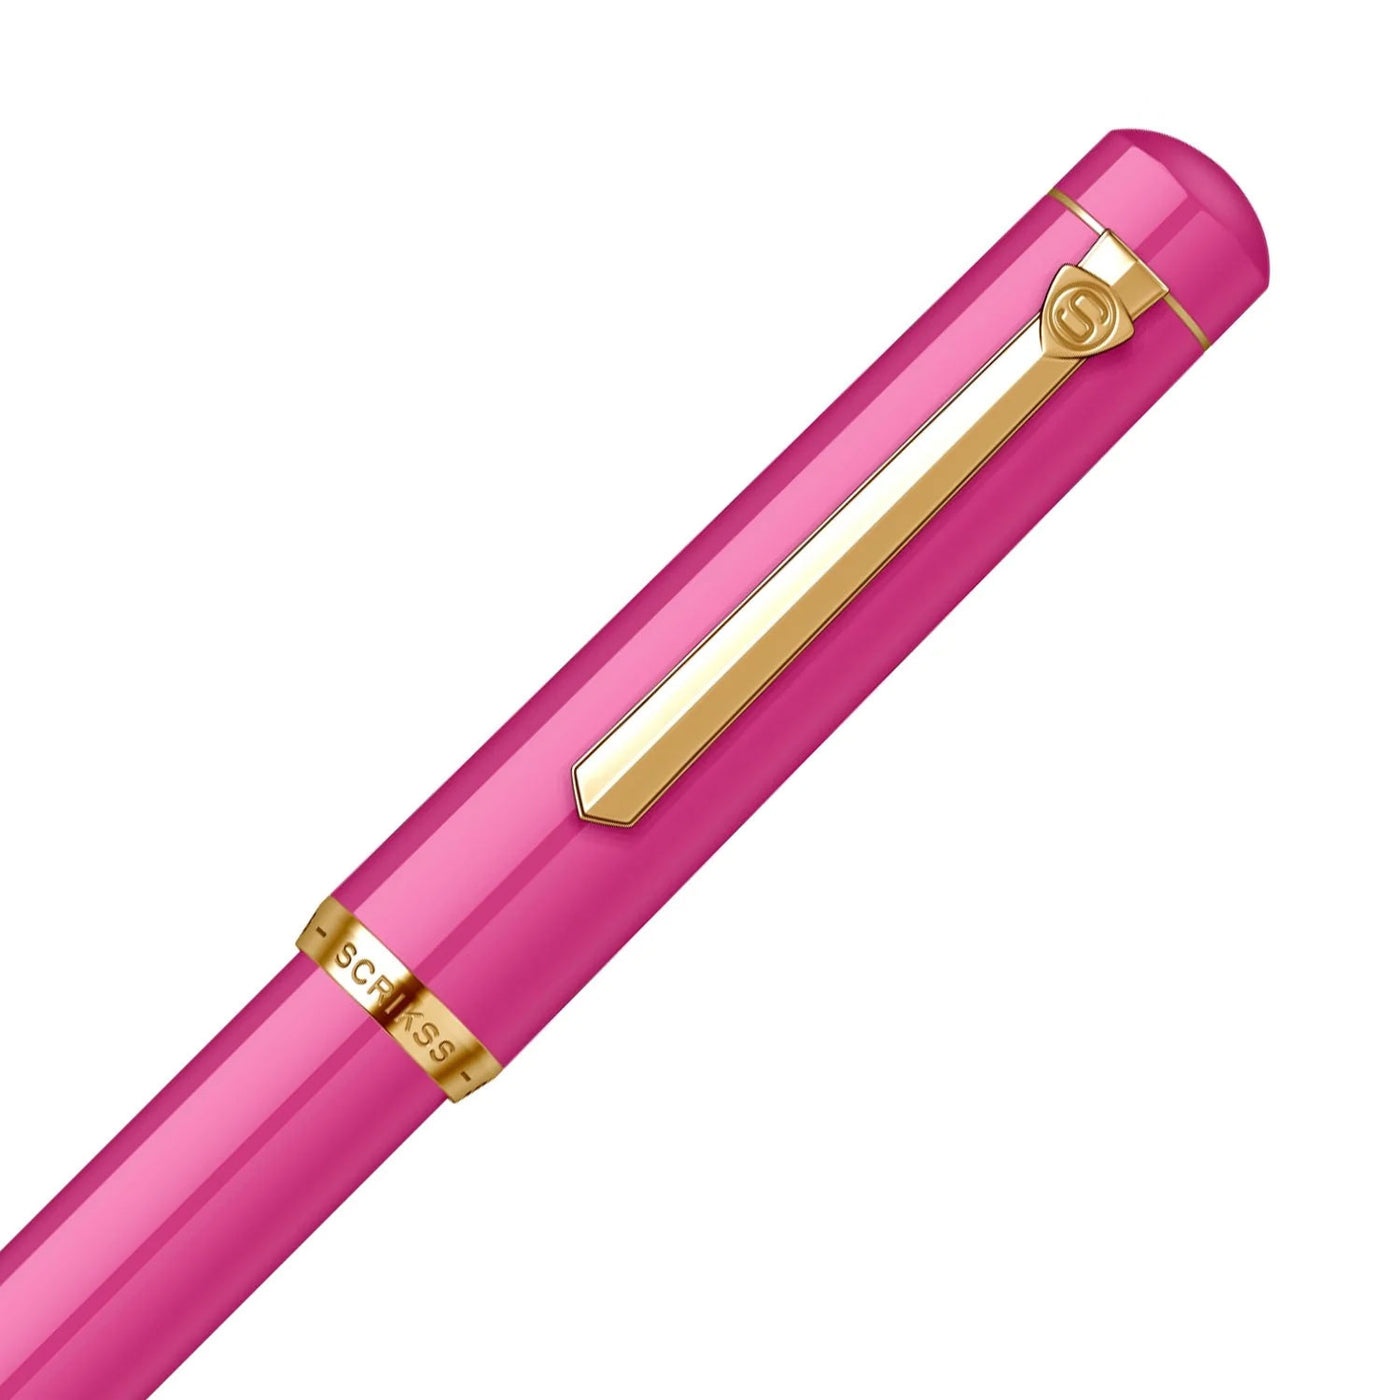 Scrikss 419 Fountain Pen - Pink GT 3